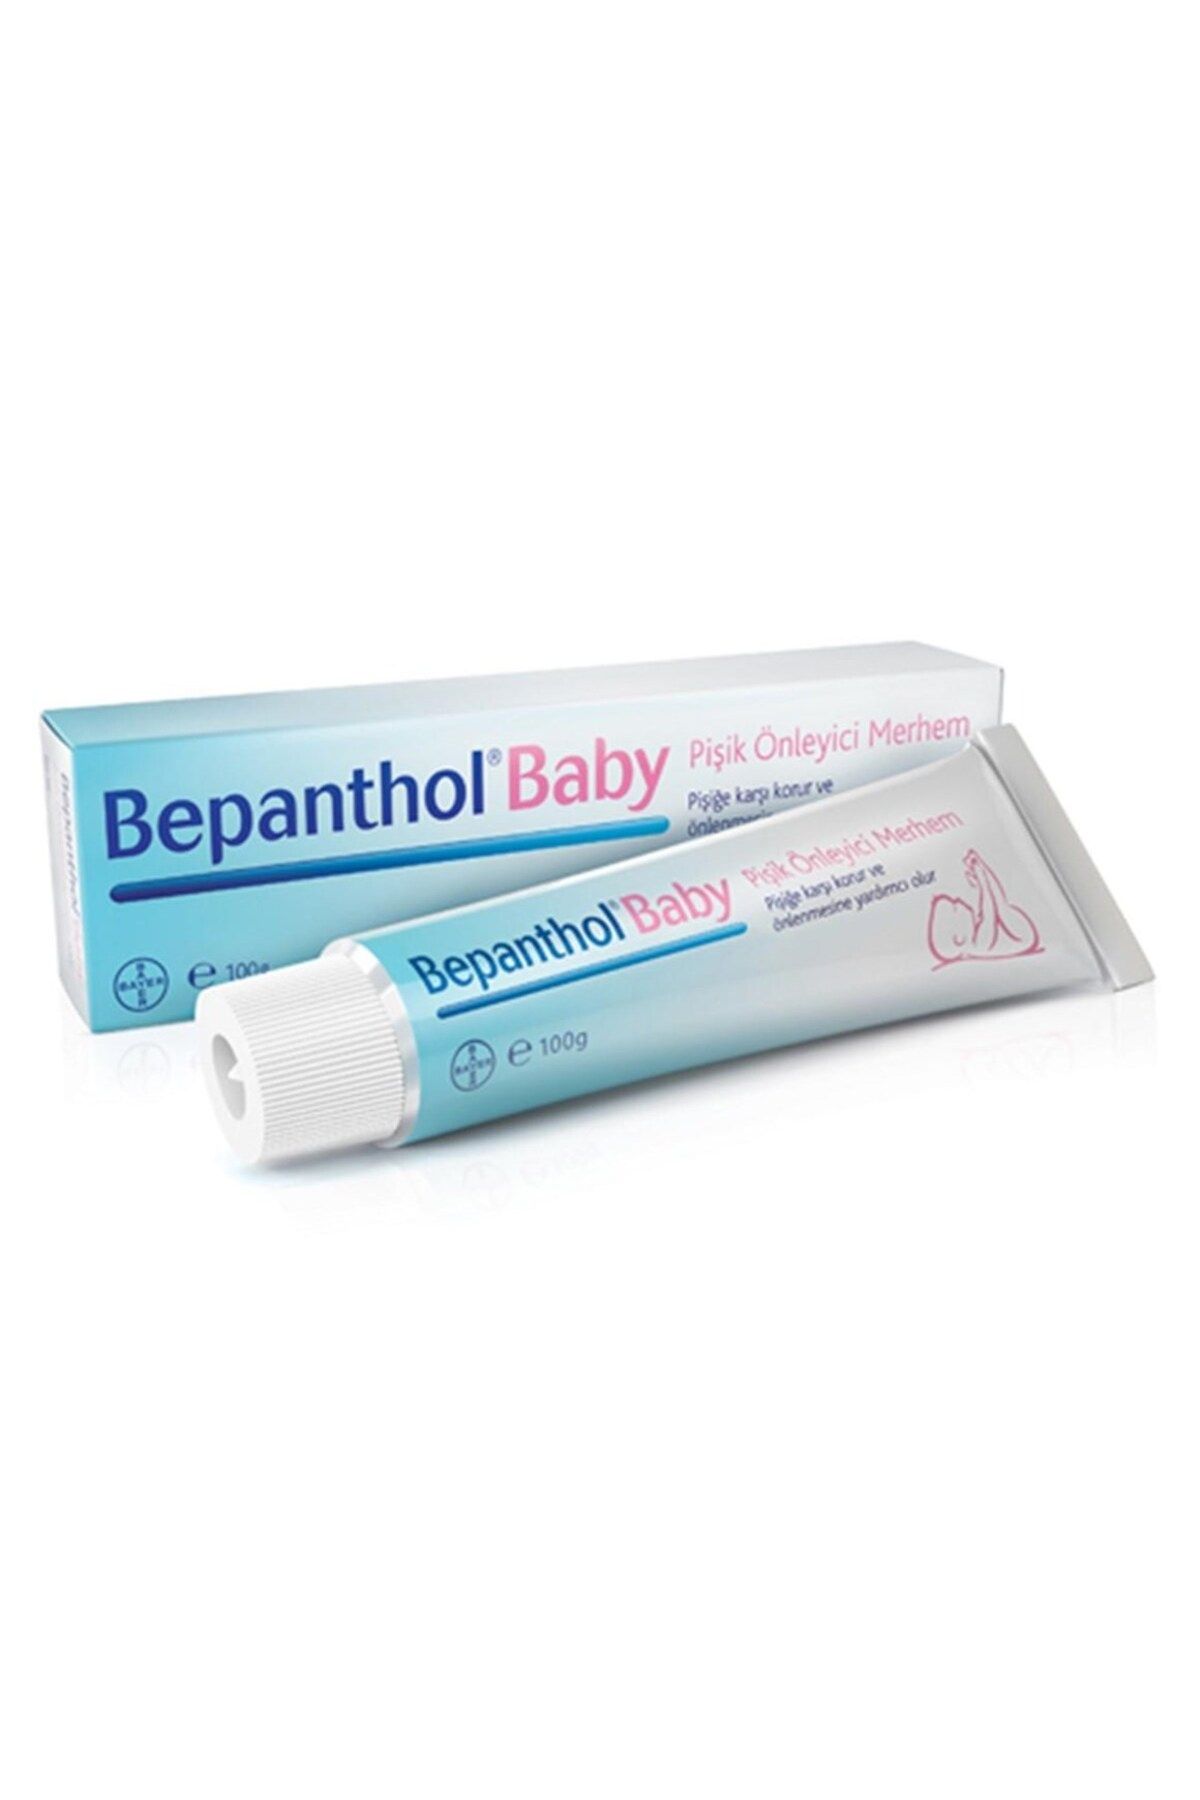 Bepanthol Baby Pişik Önlemeye Yardımcı Merhem 100 gr